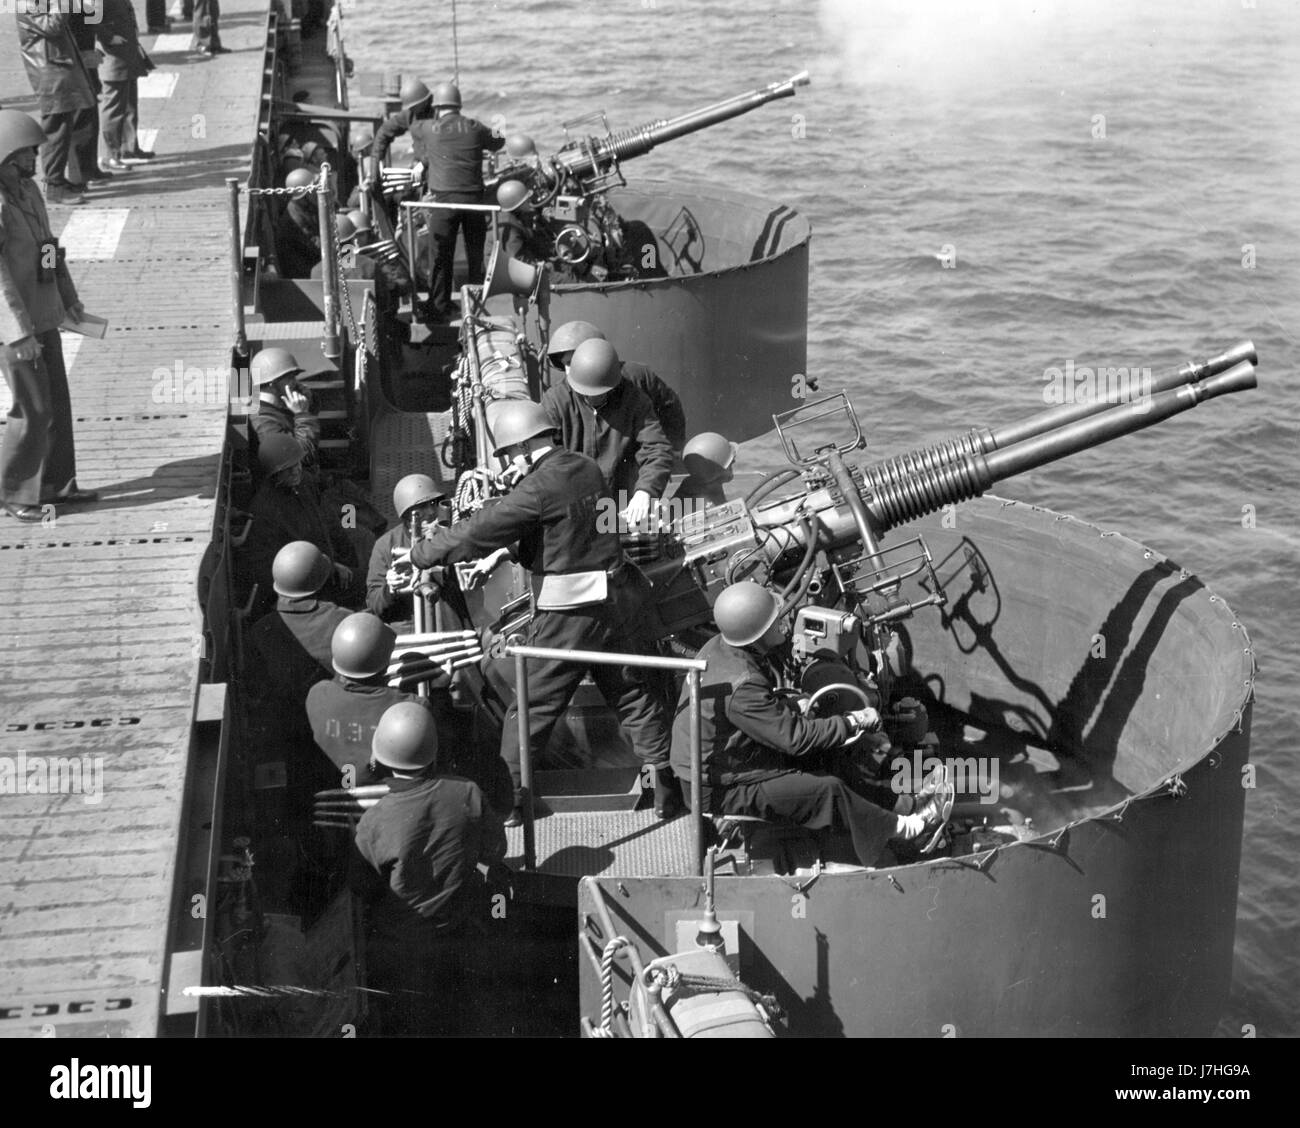 WW II - due gemelle Bofors da 40 mm, in pratica per la battaglia. In base al testo stampato sul retro di questa foto, queste pistole sono montate su "una delle più recenti portaerei d'America - una nave da guerra elegante e snella convertita da una nave da crociera leggera". Questa foto del 21 giugno 1943 mostra le pistole anti-aerei Bofors che si esercitano durante la crociera della nave shakedown. Questa fotografia ufficiale della Marina degli Stati Uniti non identifica la nave o l'equipaggio. Per vedere le mie immagini d'epoca correlate, Cerca: Prestor vintage WW II arma vehicle Foto Stock